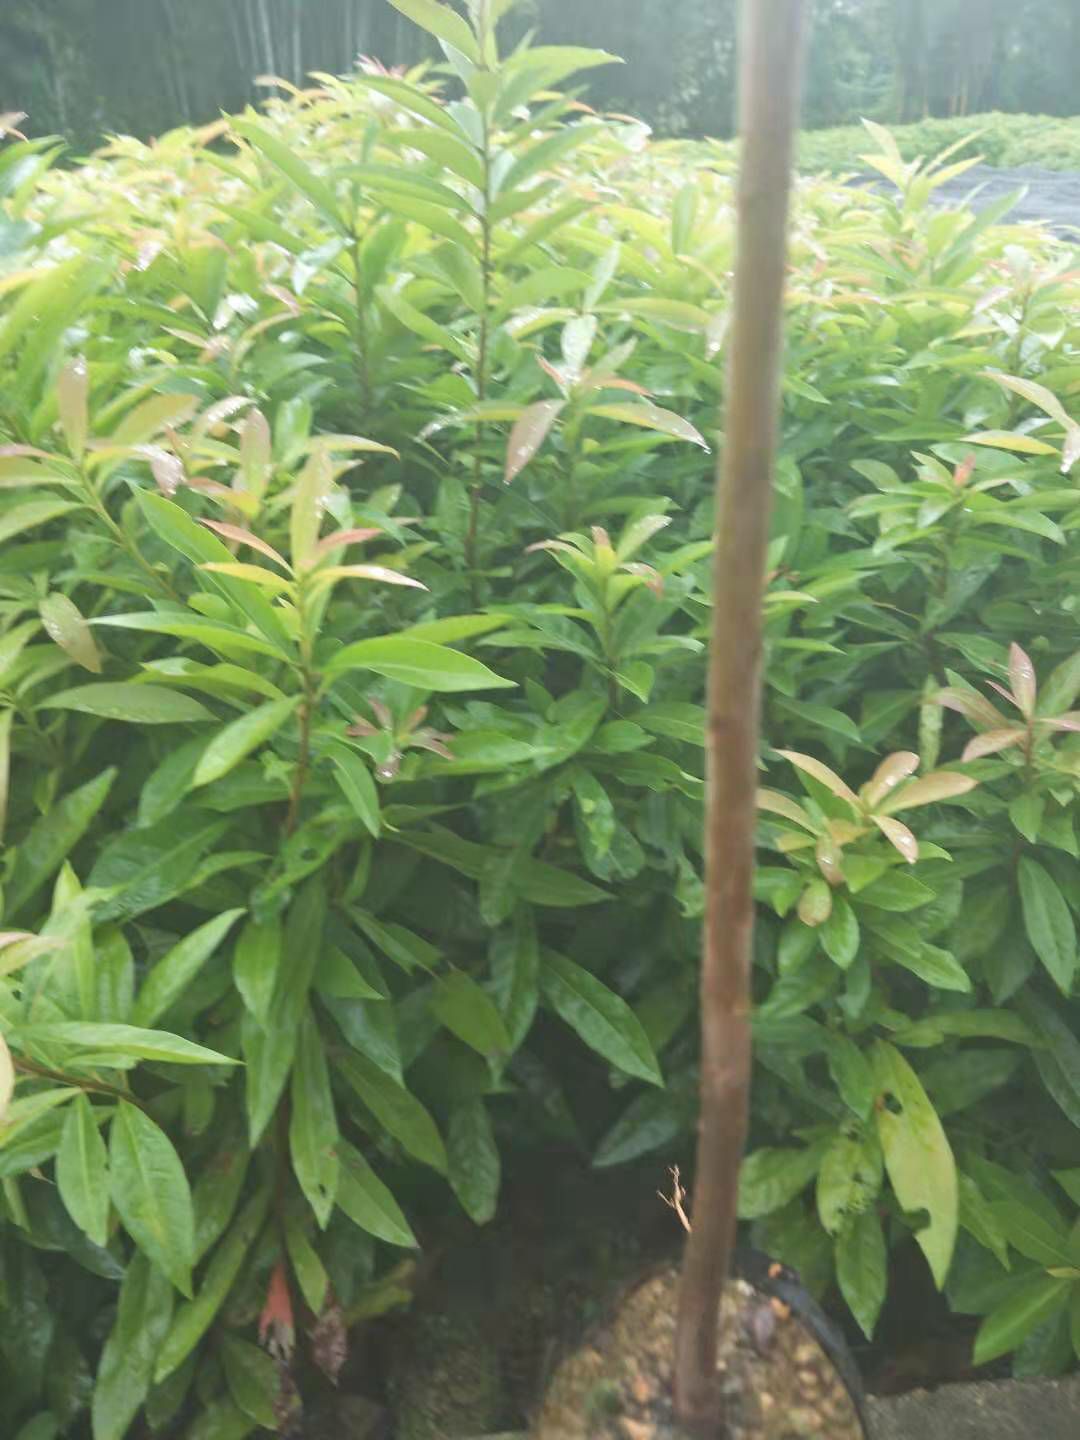 广州木荷袋苗  一百亩基地、专业培养木荷营养袋苗。